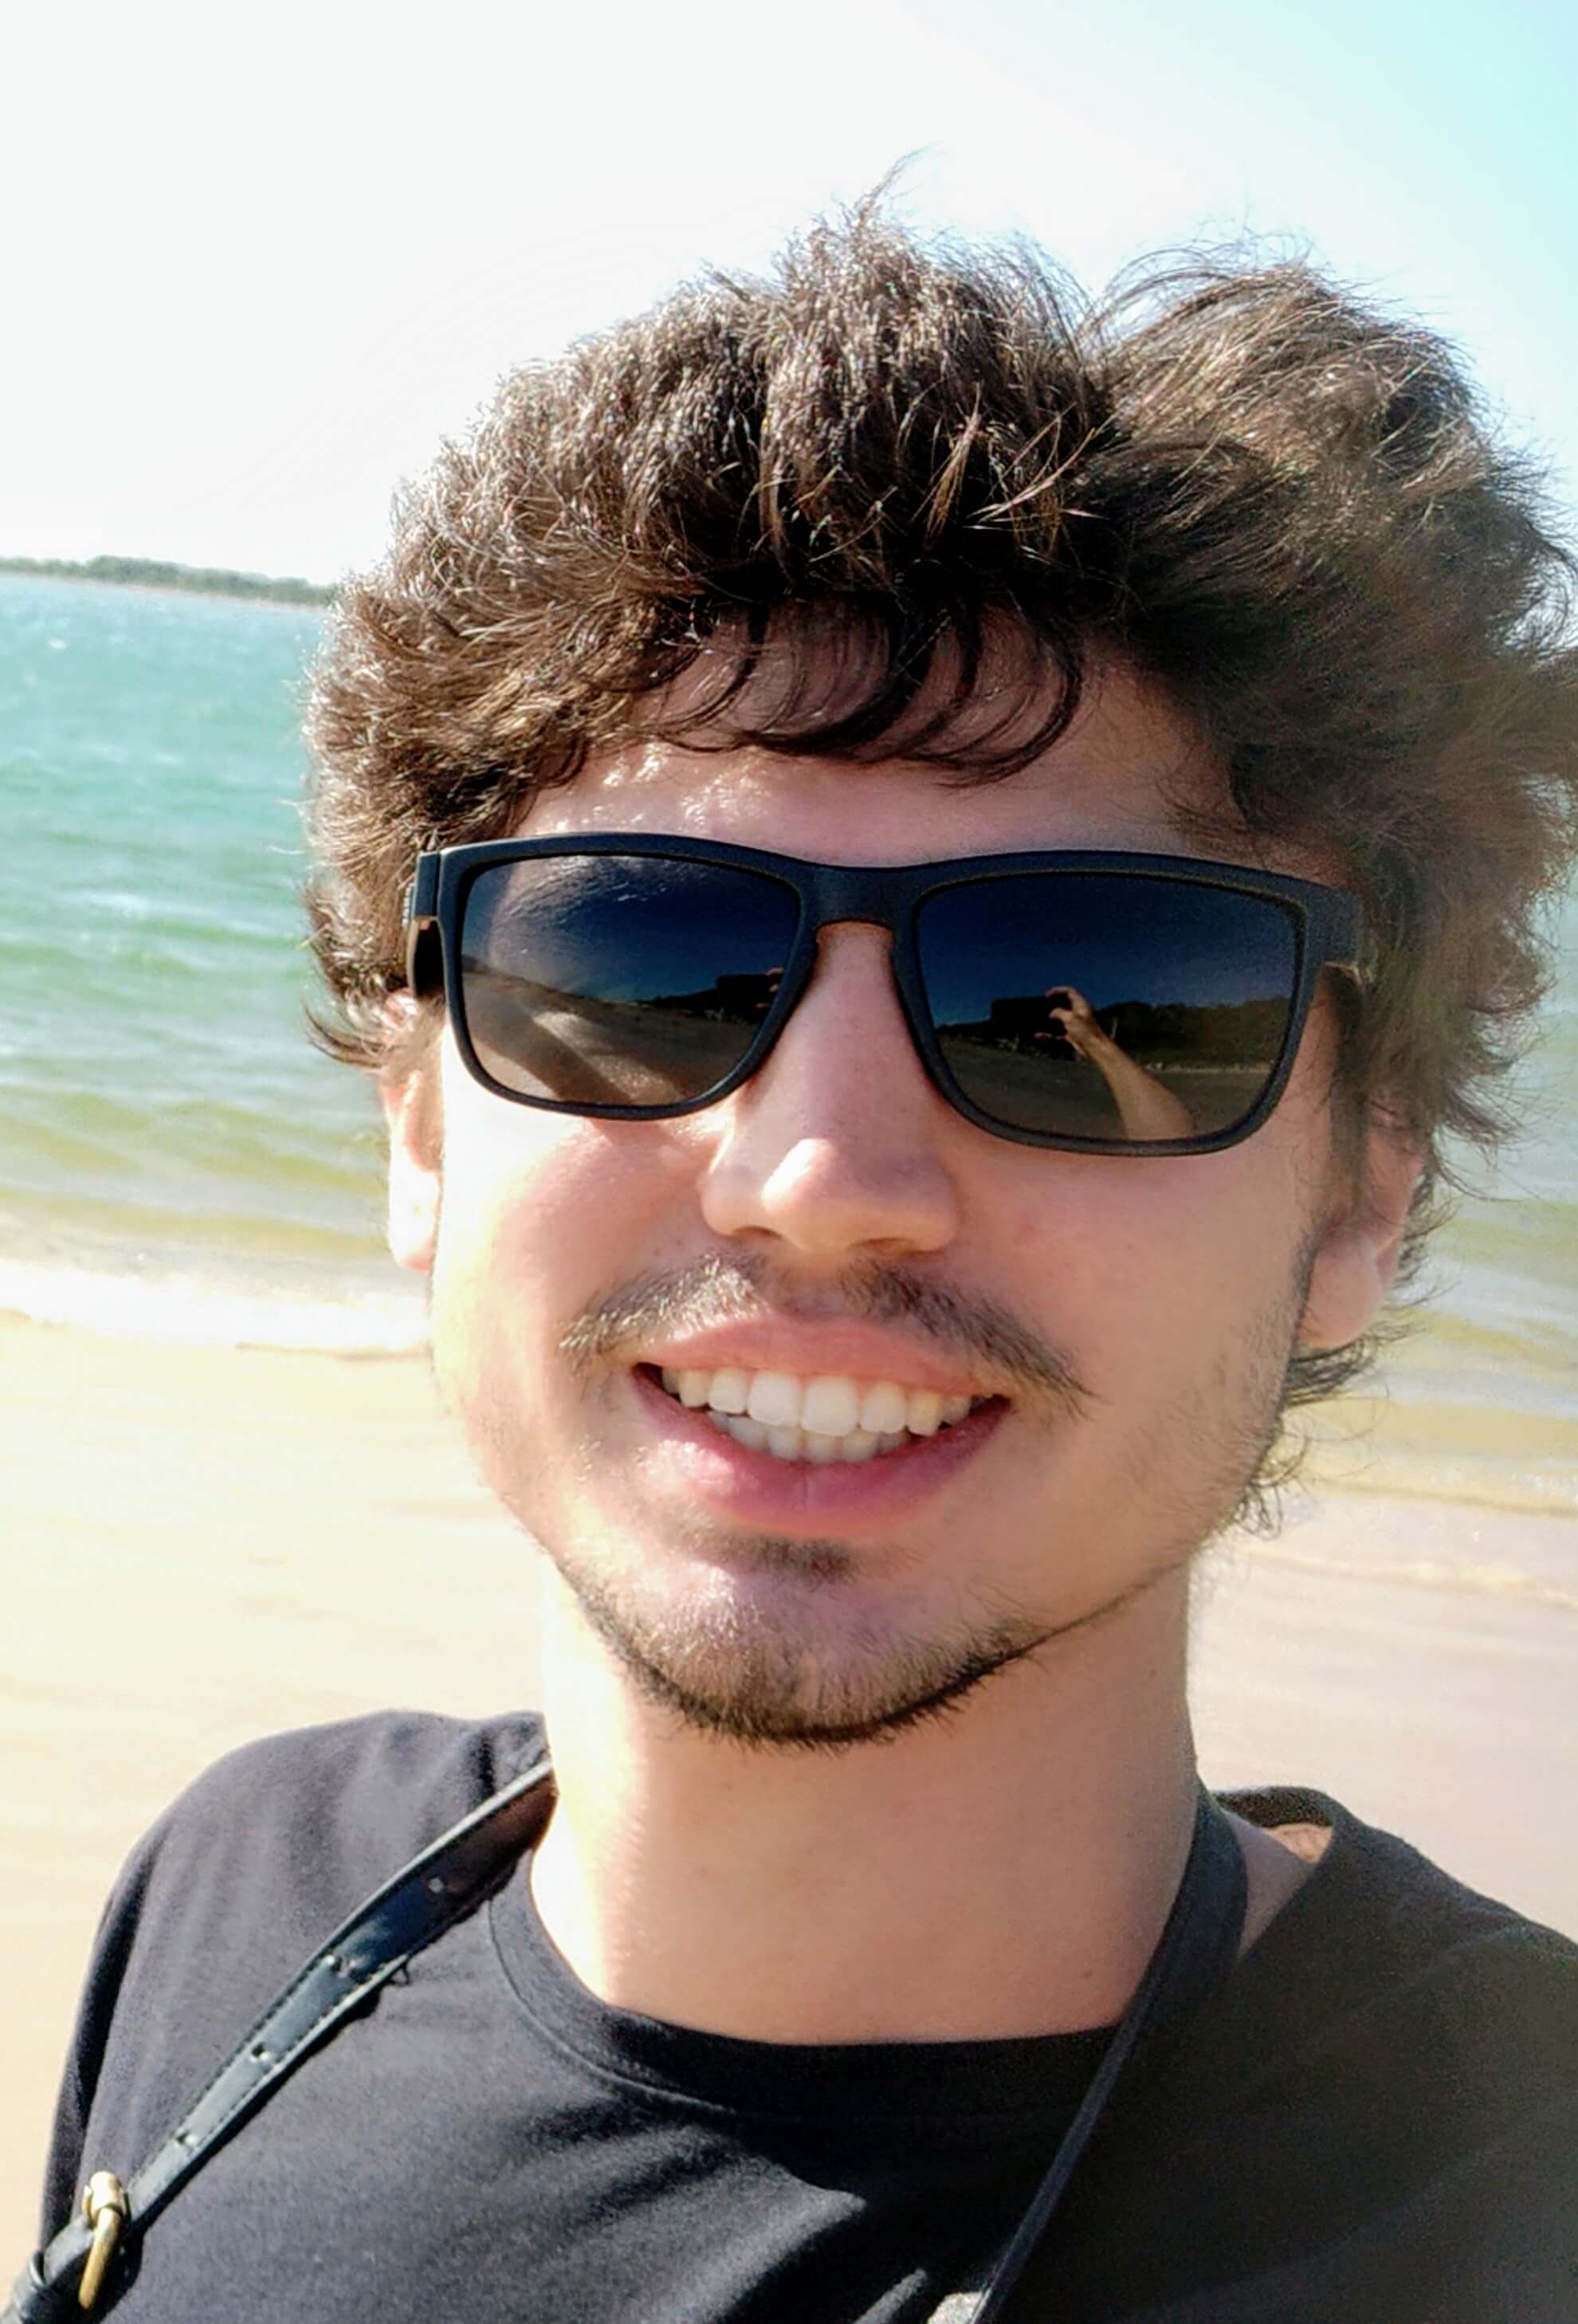 Eduardo smiling on the beach!